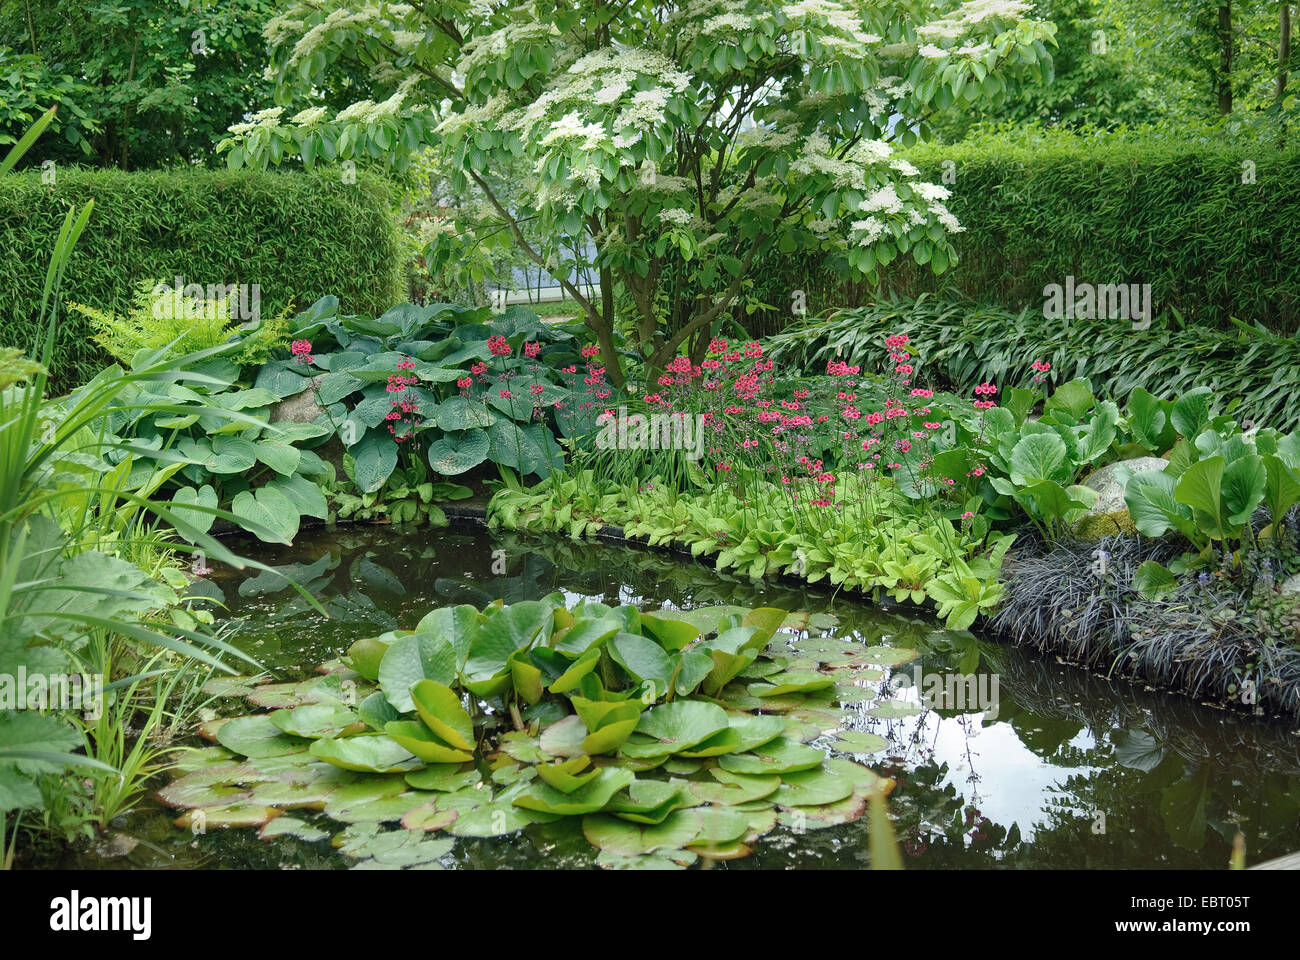 Giant sanguinello (Cornus controversa), fioritura ad un laghetto in giardino, Germania Foto Stock